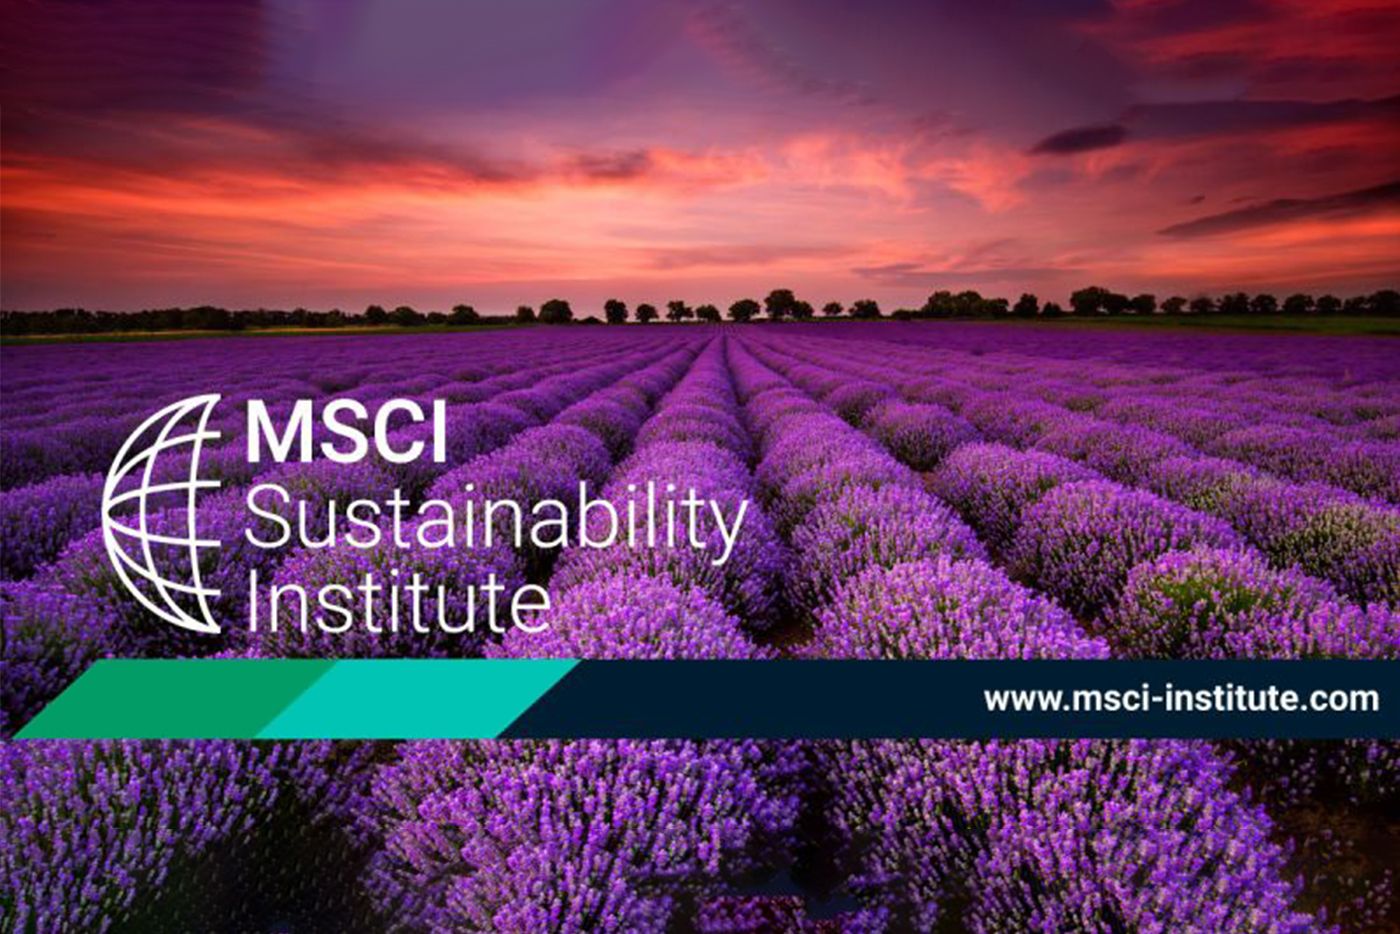 msci-institute-careersblog.jpg